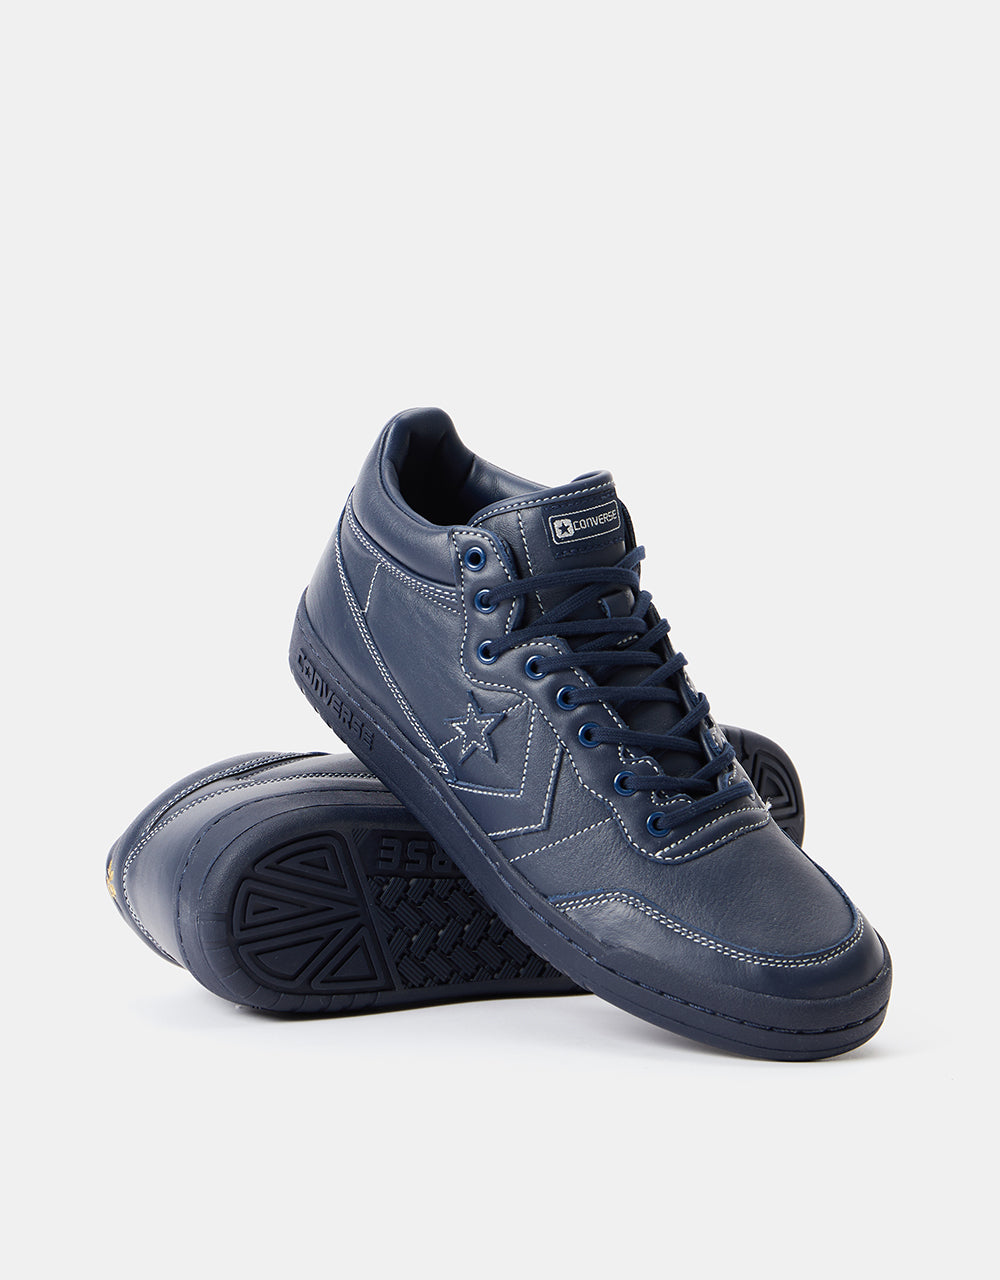 Converse Fastbreak Pro Sage Elsesser Skate Shoes - Obsidian/Navy/Obsidian